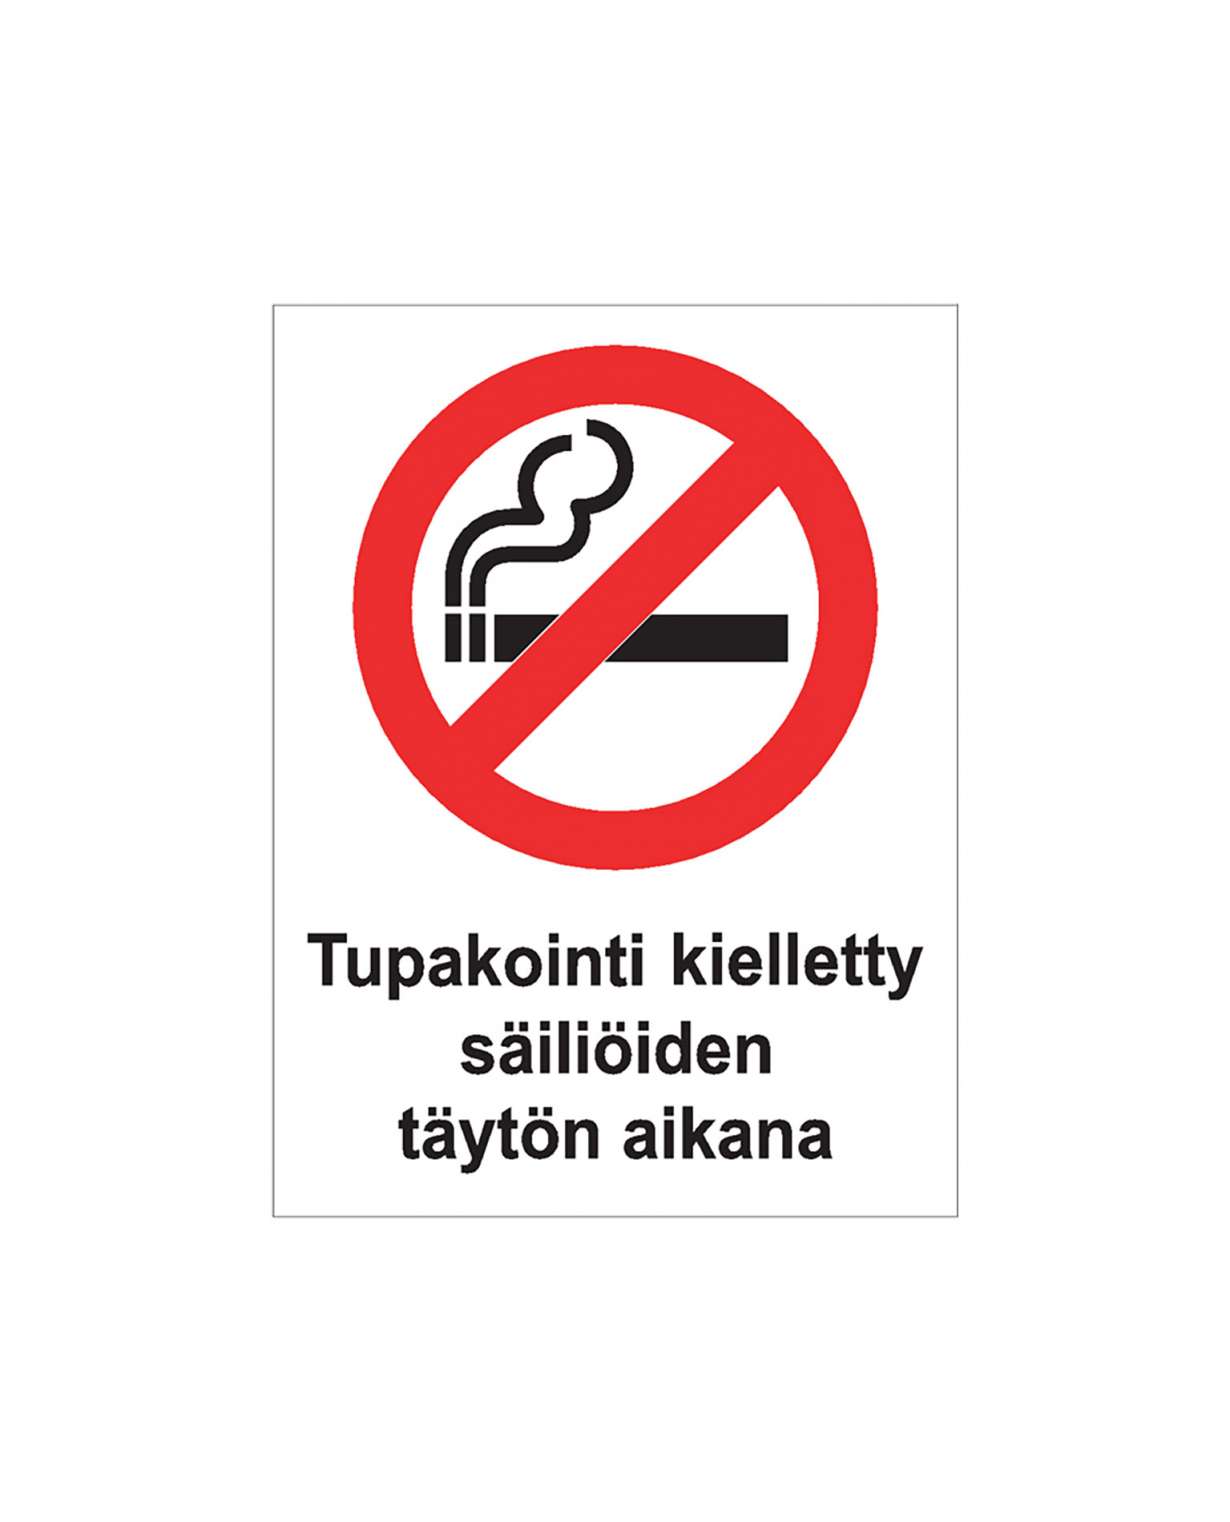 Tupakointi kielletty säiliöiden täytön aikana, Ibond alumiini, 200x300 mm